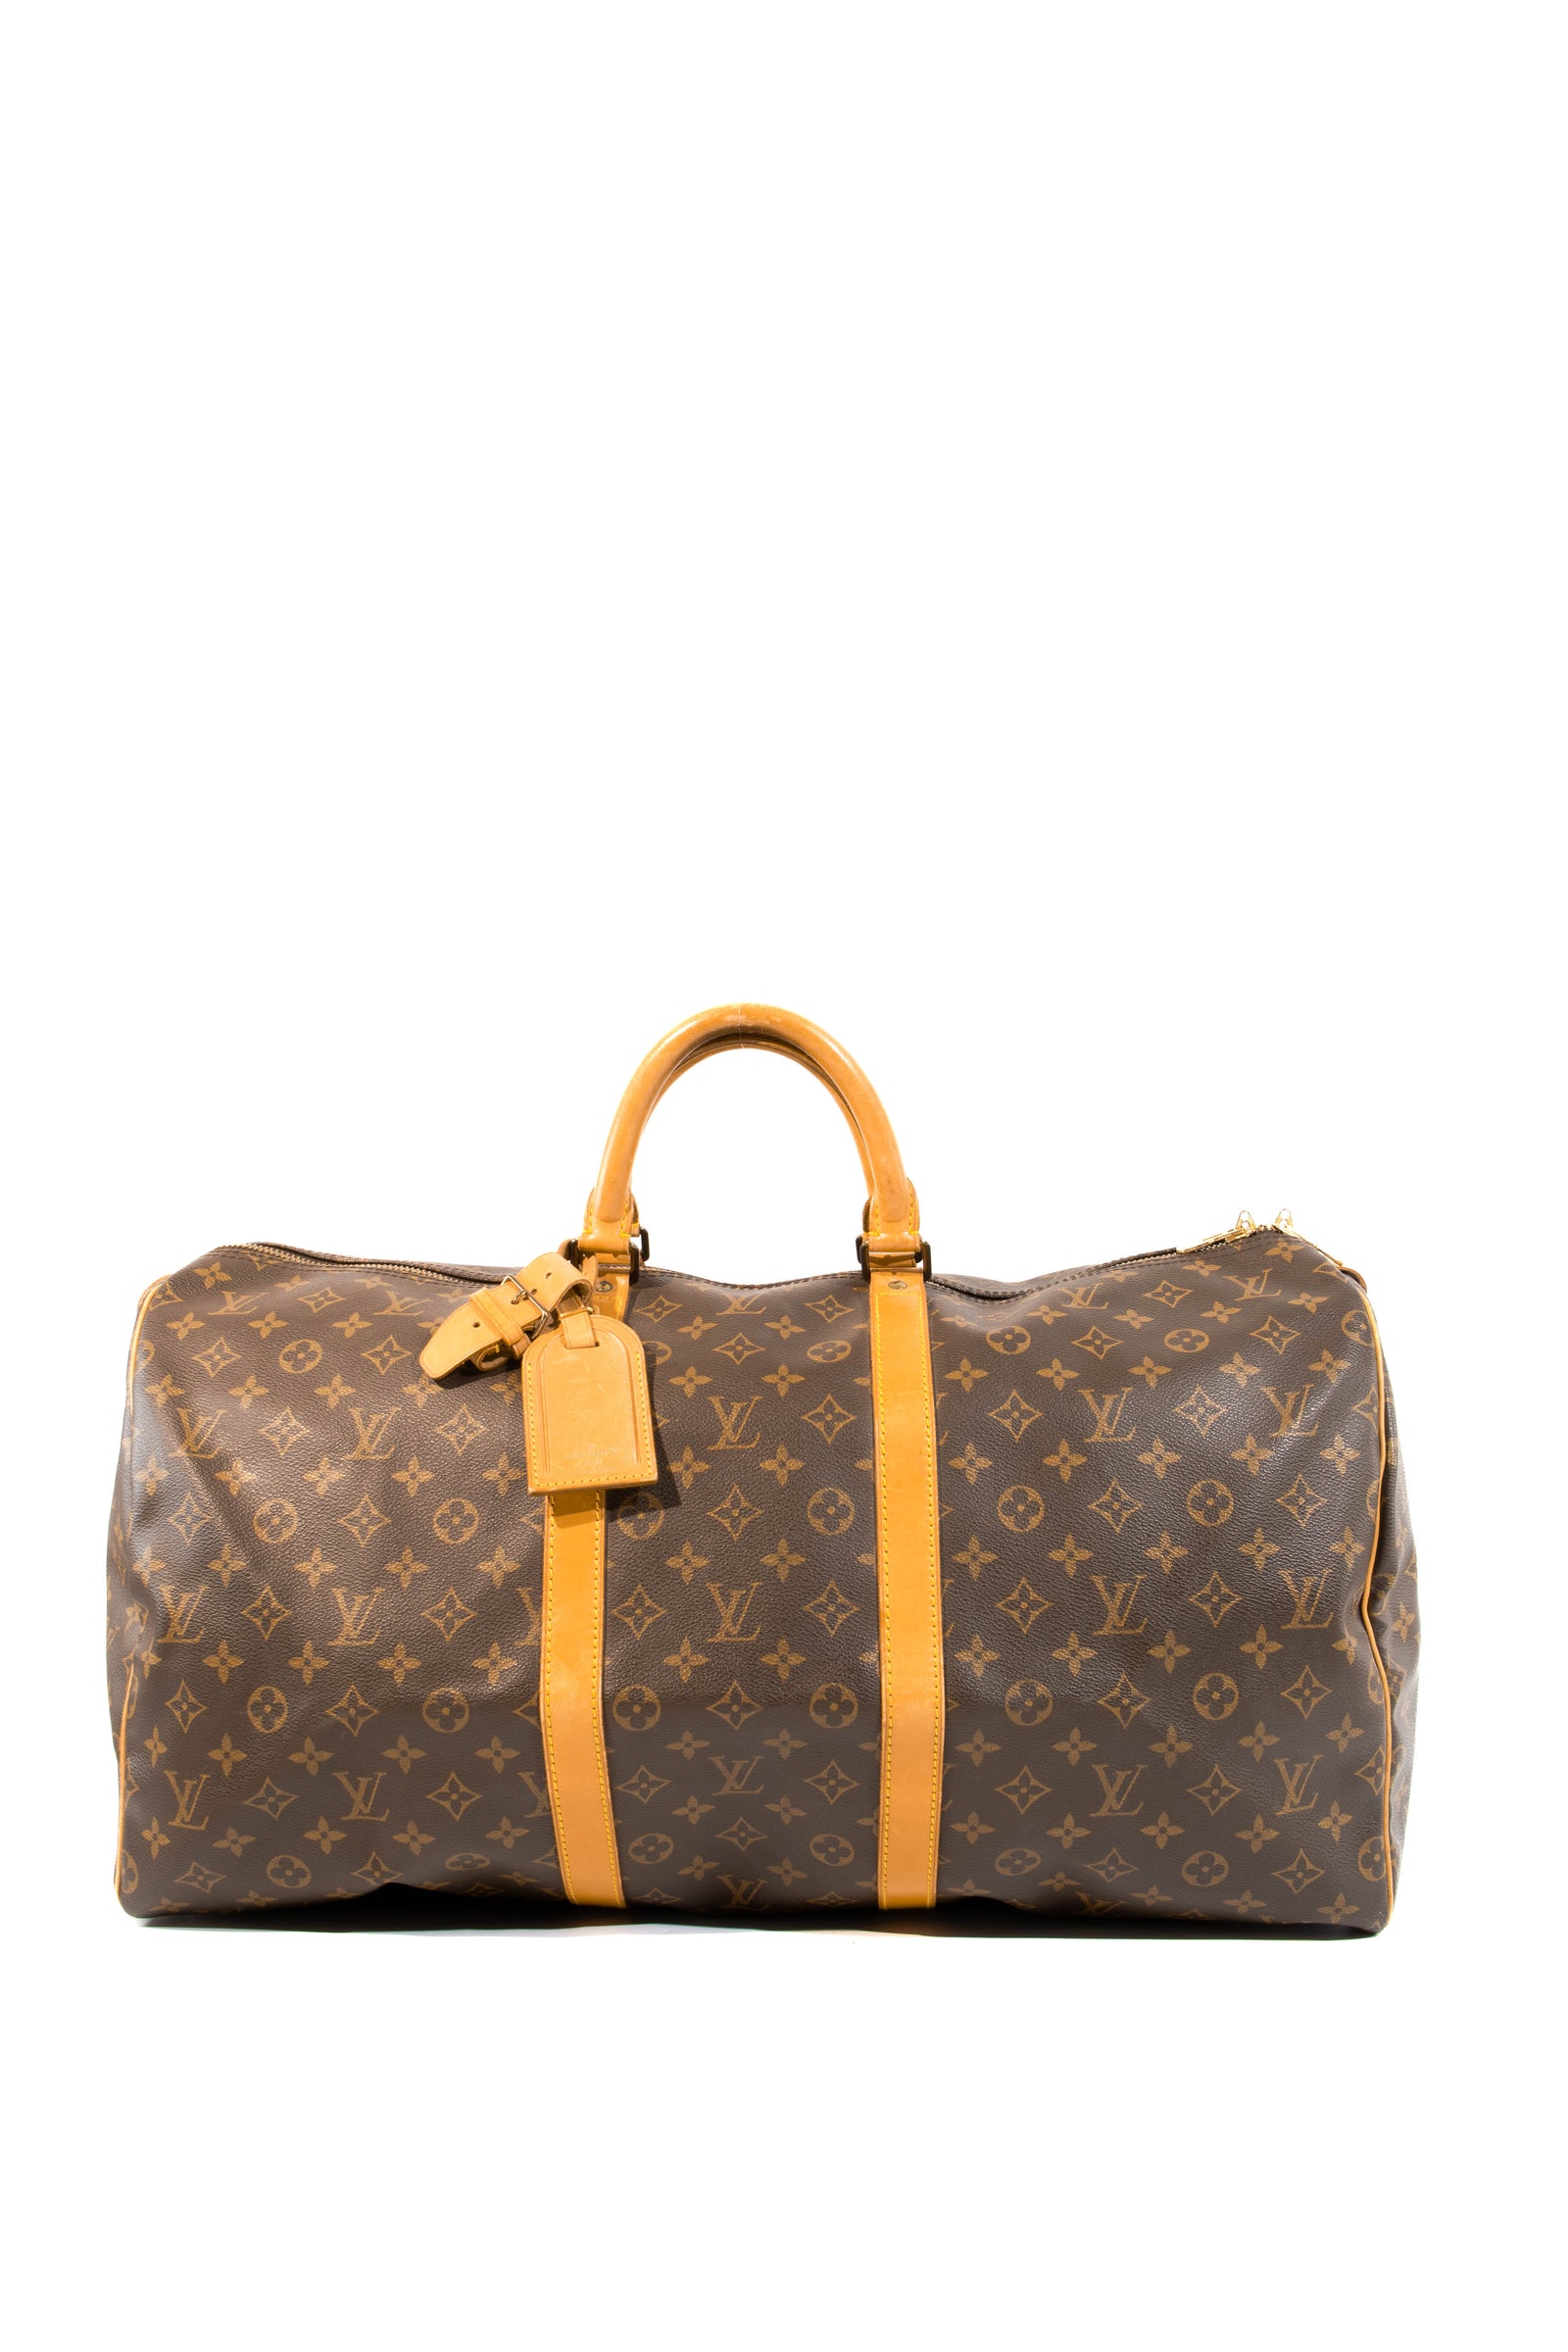 Bonhams : A Louis Vuitton large monogram plastic beach bag with attached  purse